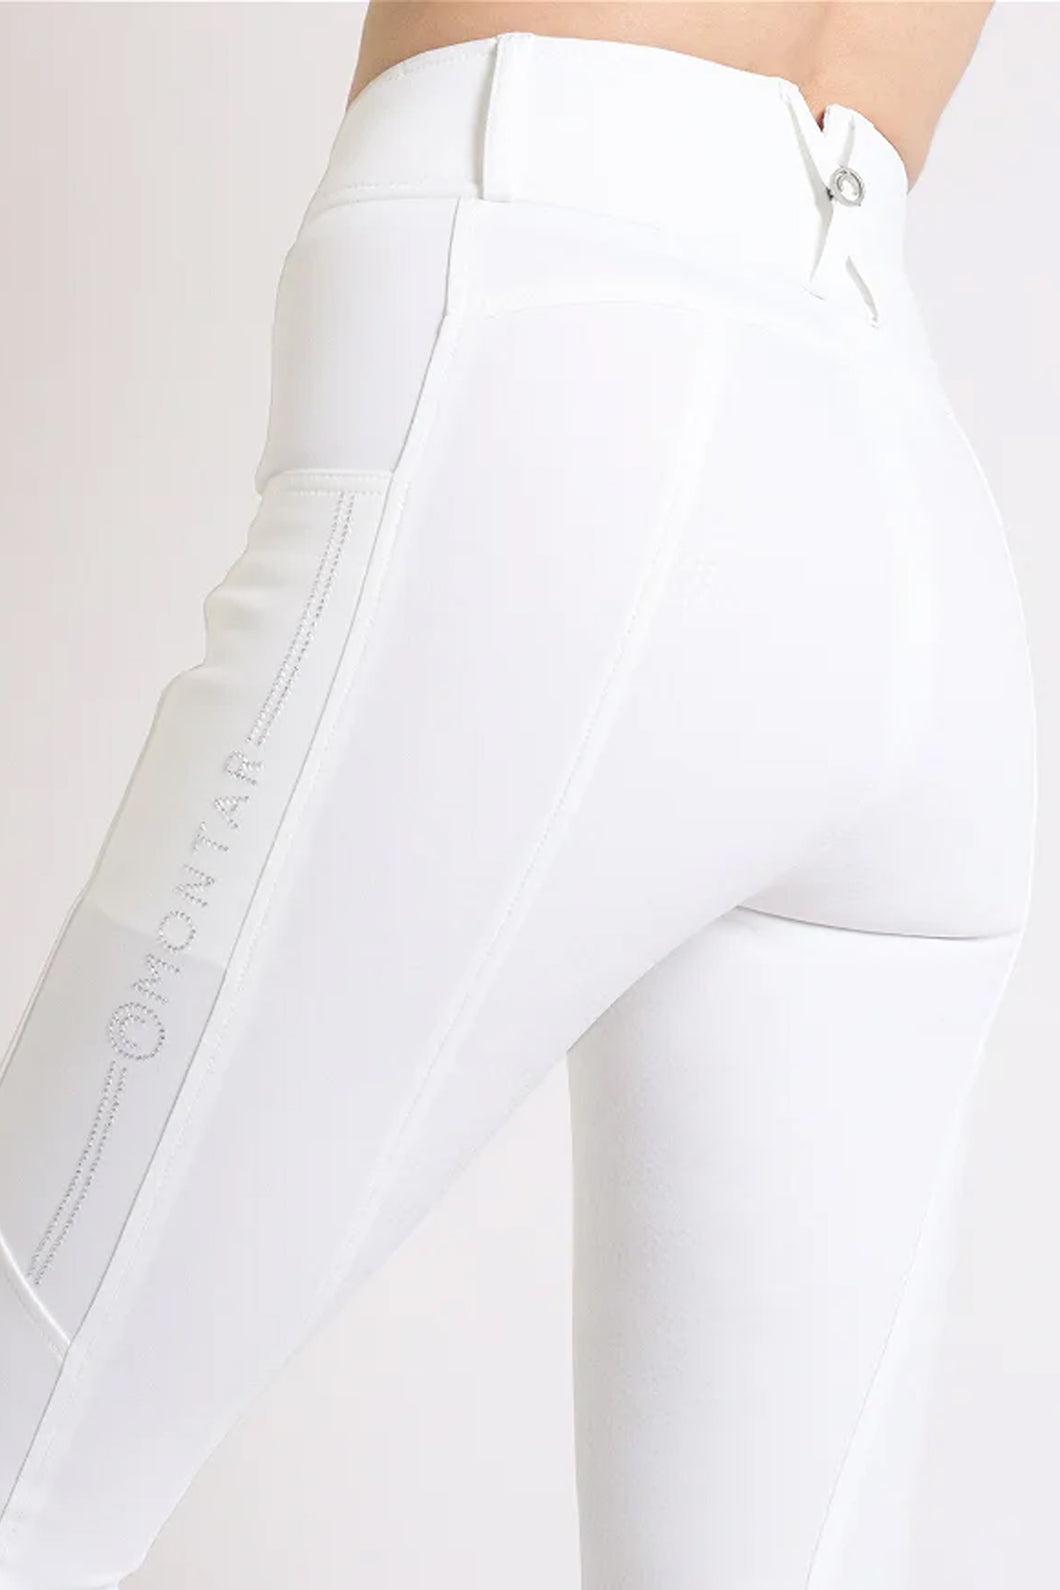 MoAviana Crystal Hybrid Leggings - White, Fullgrip